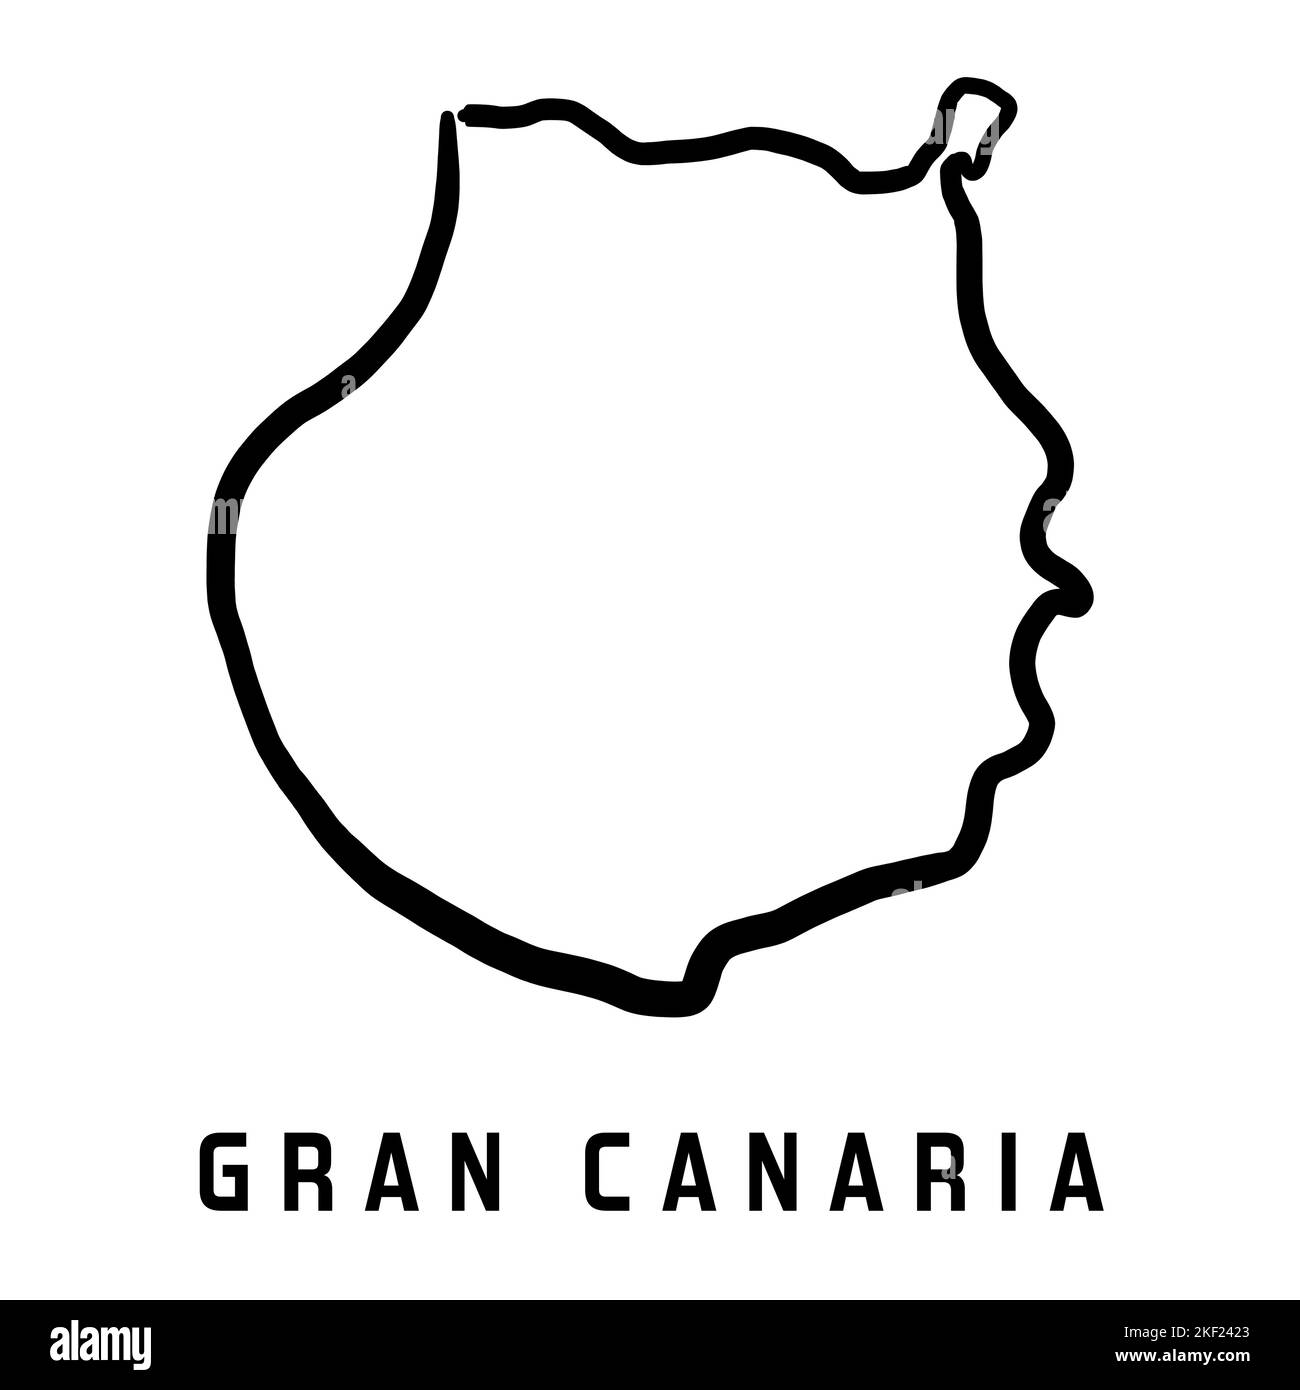 Inselkarte Gran Canaria (Gran Canaria) einfacher Überblick. Vektorgrafik handgezeichnete Karte im vereinfachten Stil. Stock Vektor